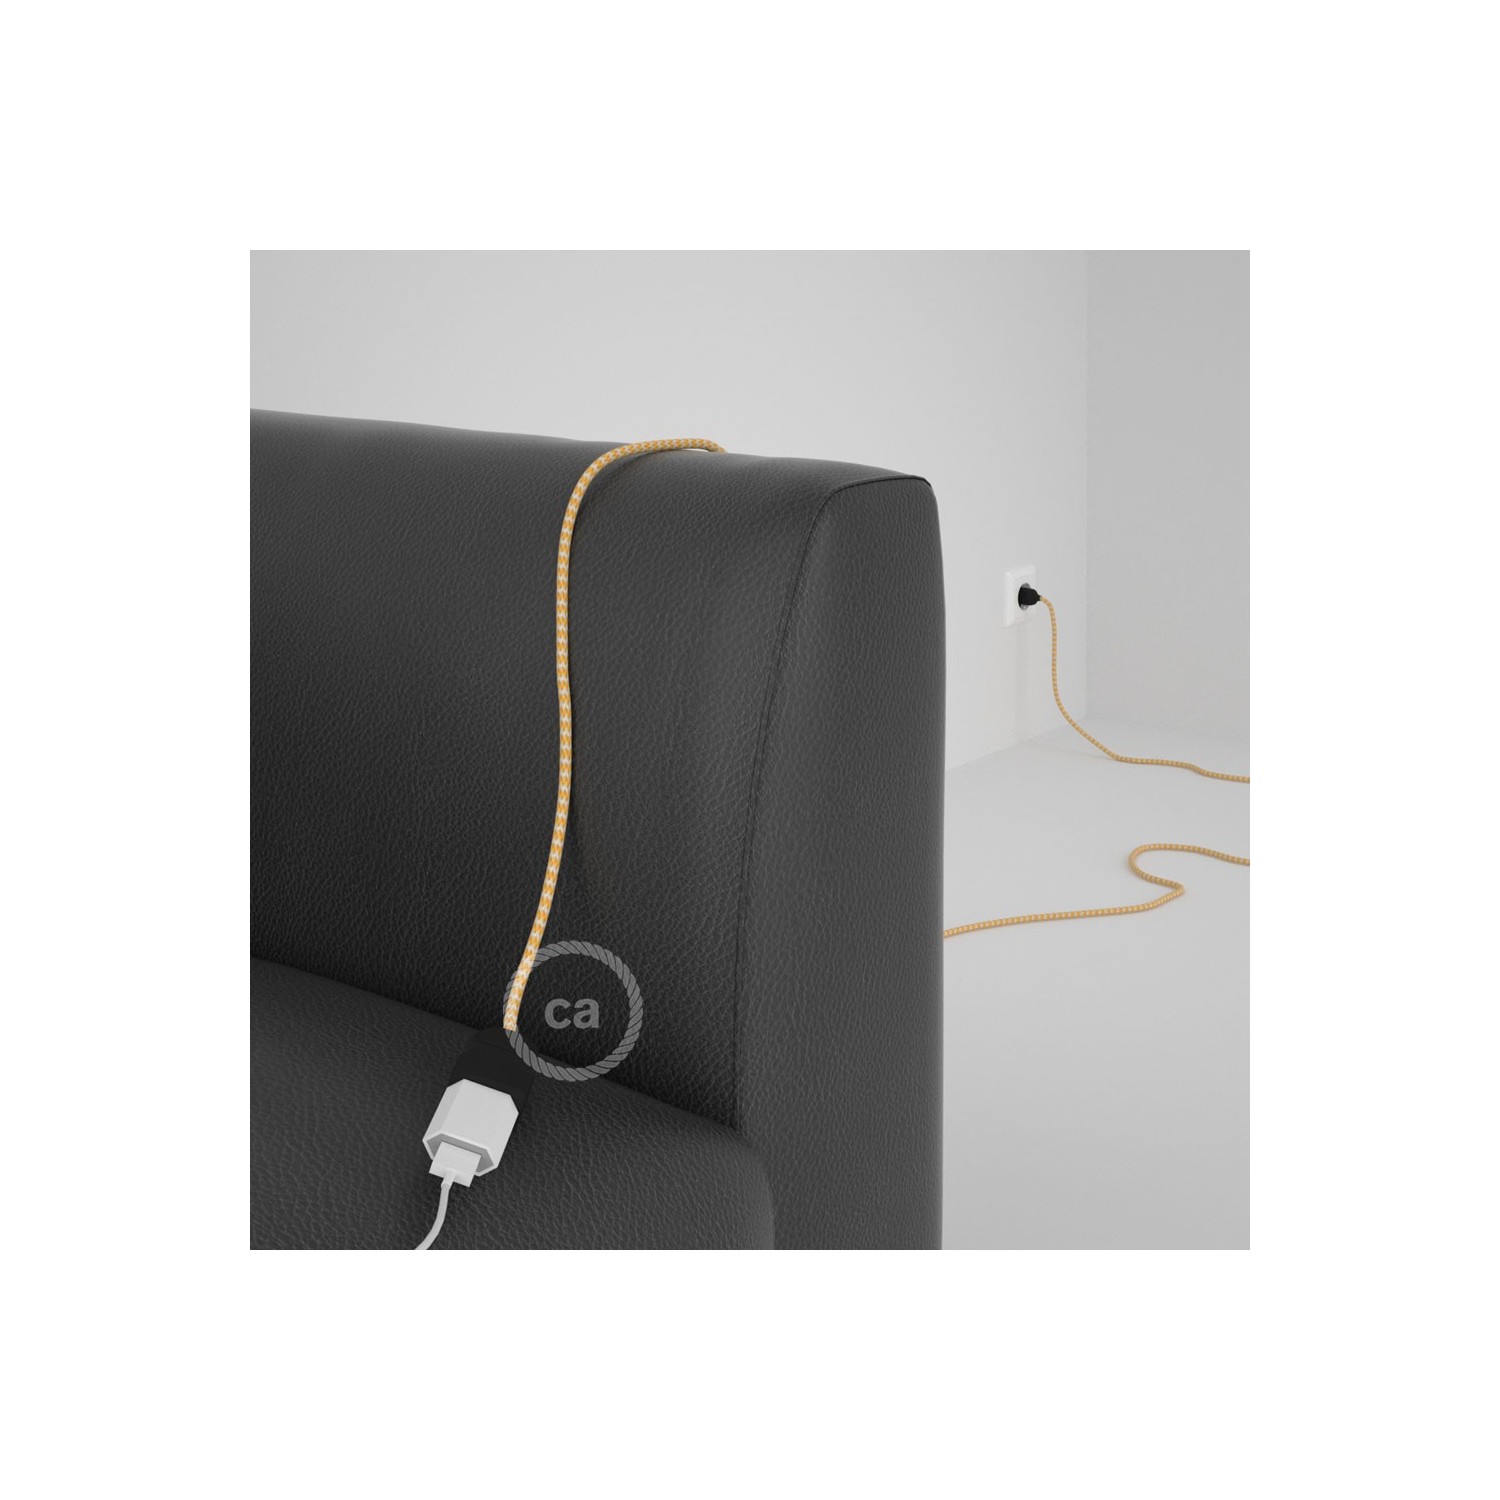 Rallonge électrique avec câble textile RZ10 Effet Soie ZigZag Blanc-Jaune 2P 10A Made in Italy.